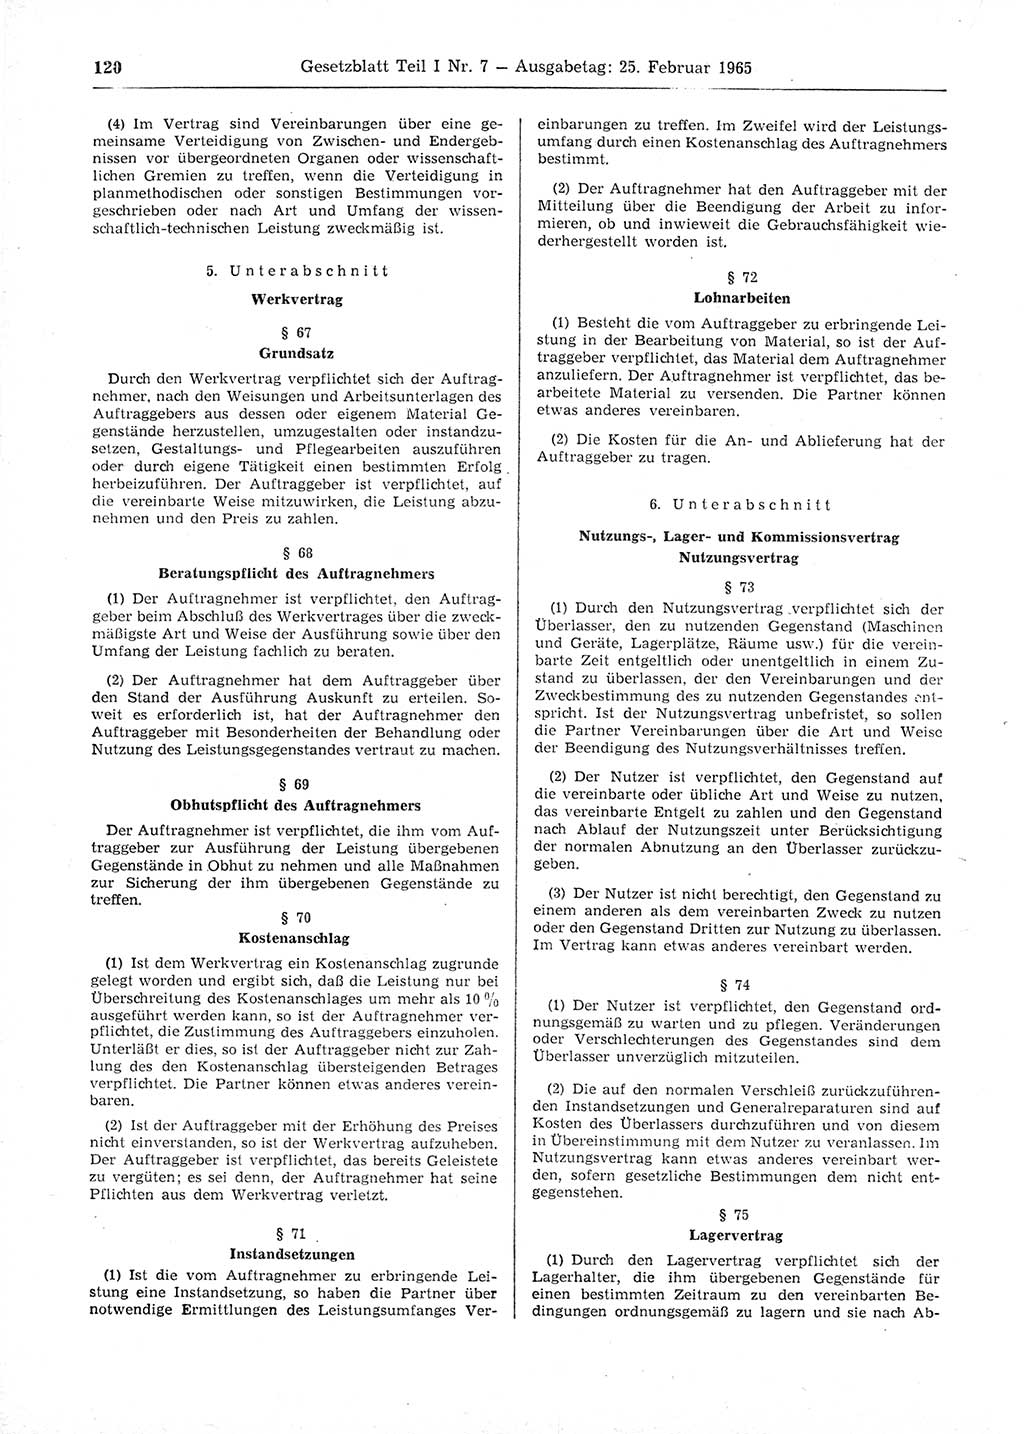 Gesetzblatt (GBl.) der Deutschen Demokratischen Republik (DDR) Teil Ⅰ 1965, Seite 120 (GBl. DDR Ⅰ 1965, S. 120)